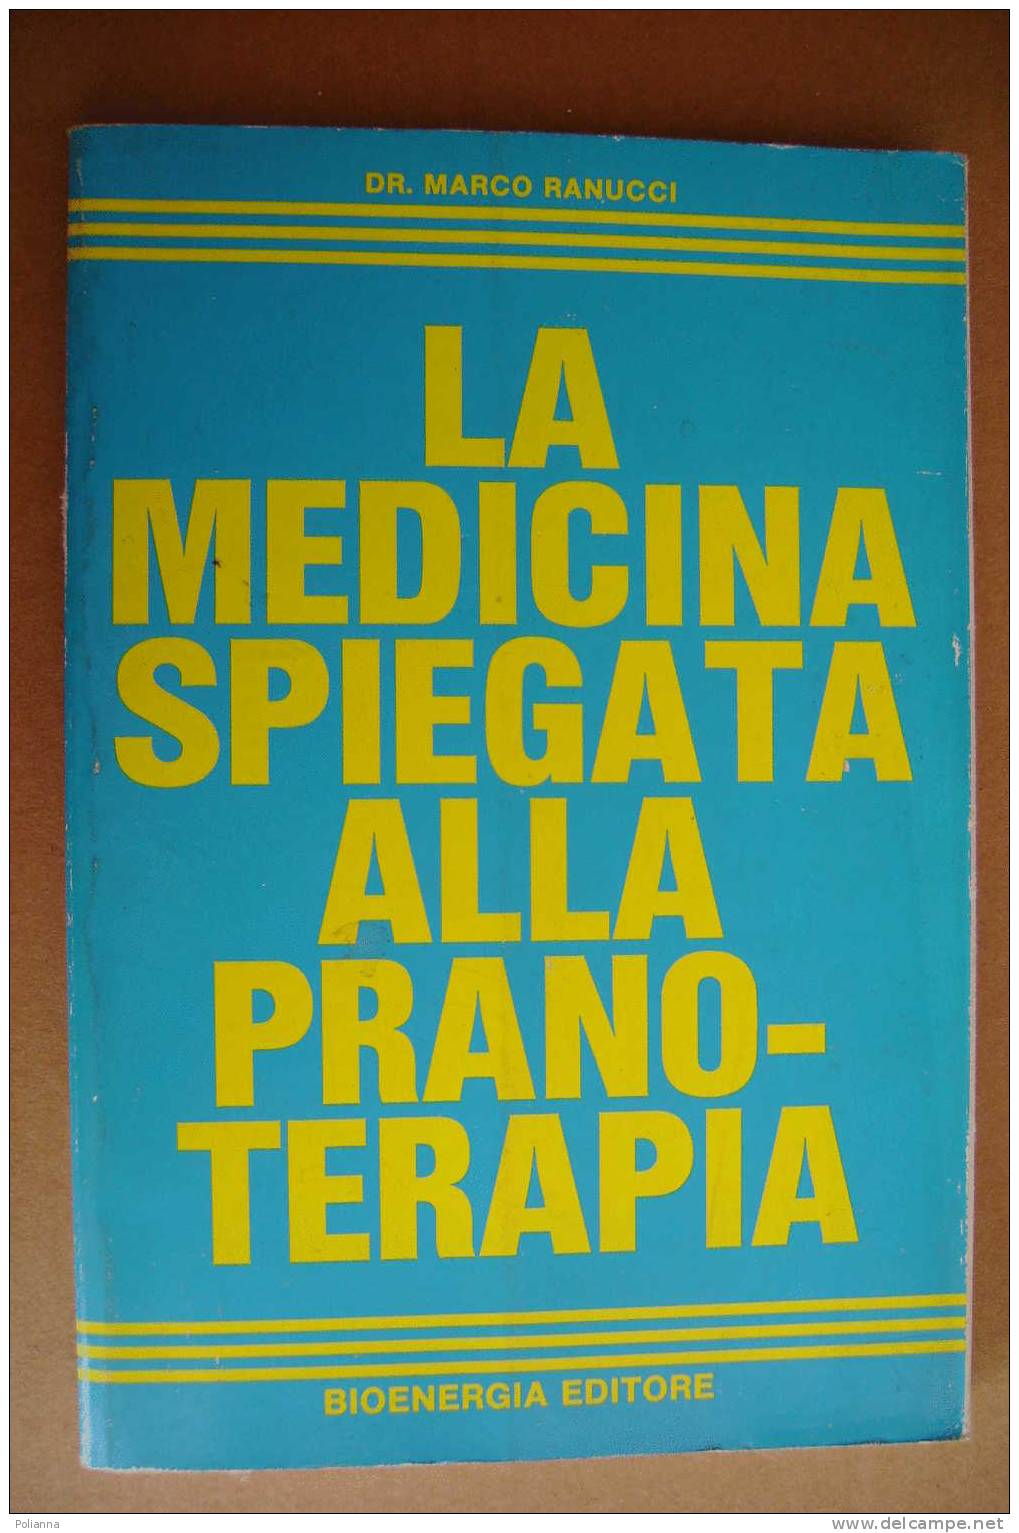 PAO/32 Dr.Marco Ranucci LA MEDICINA SPIEGATA ALLA PRANOTERAPIA Bioenergia Edit. 1985 - Medicina, Psicologia